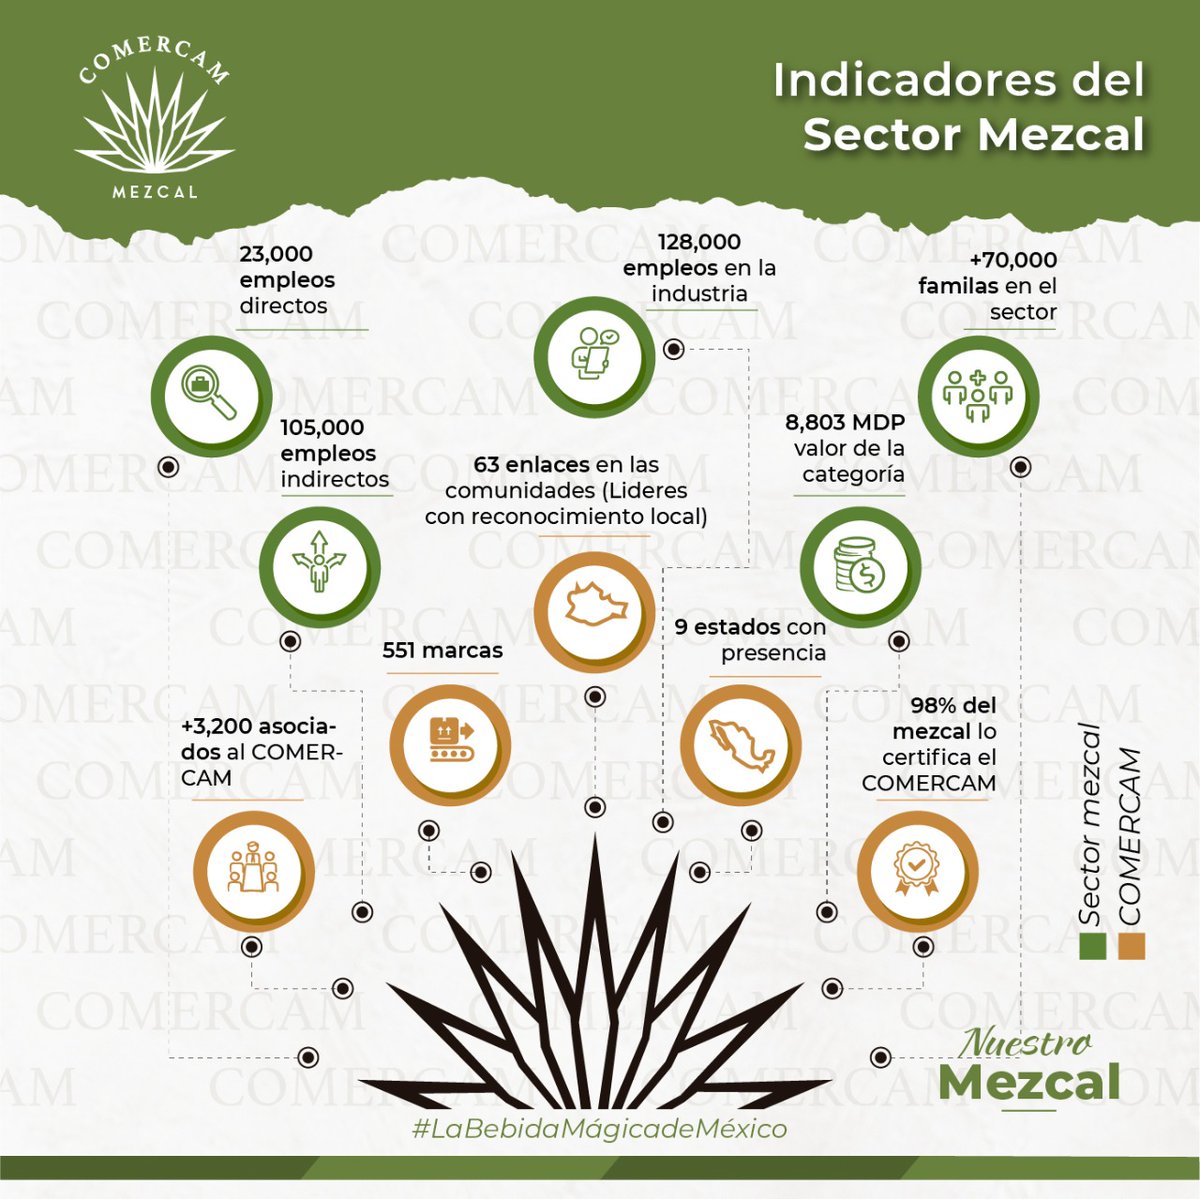 𝑵𝑼𝑬𝑺𝑻𝑹𝑶 𝑴𝑬𝒁𝑪𝑨𝑳
Estos son los indicadores que representan el Consejo Mexicano Regulador de la Calidad del Mezcal y el Sector Mezcal.
El Mezcal: La Bebida mágica de México
 
#DenominacionDeOrigenMezcal #SigamosCreciendoJuntos #Mezcal  #NuestroMezcal #SabíasQue #NOM070